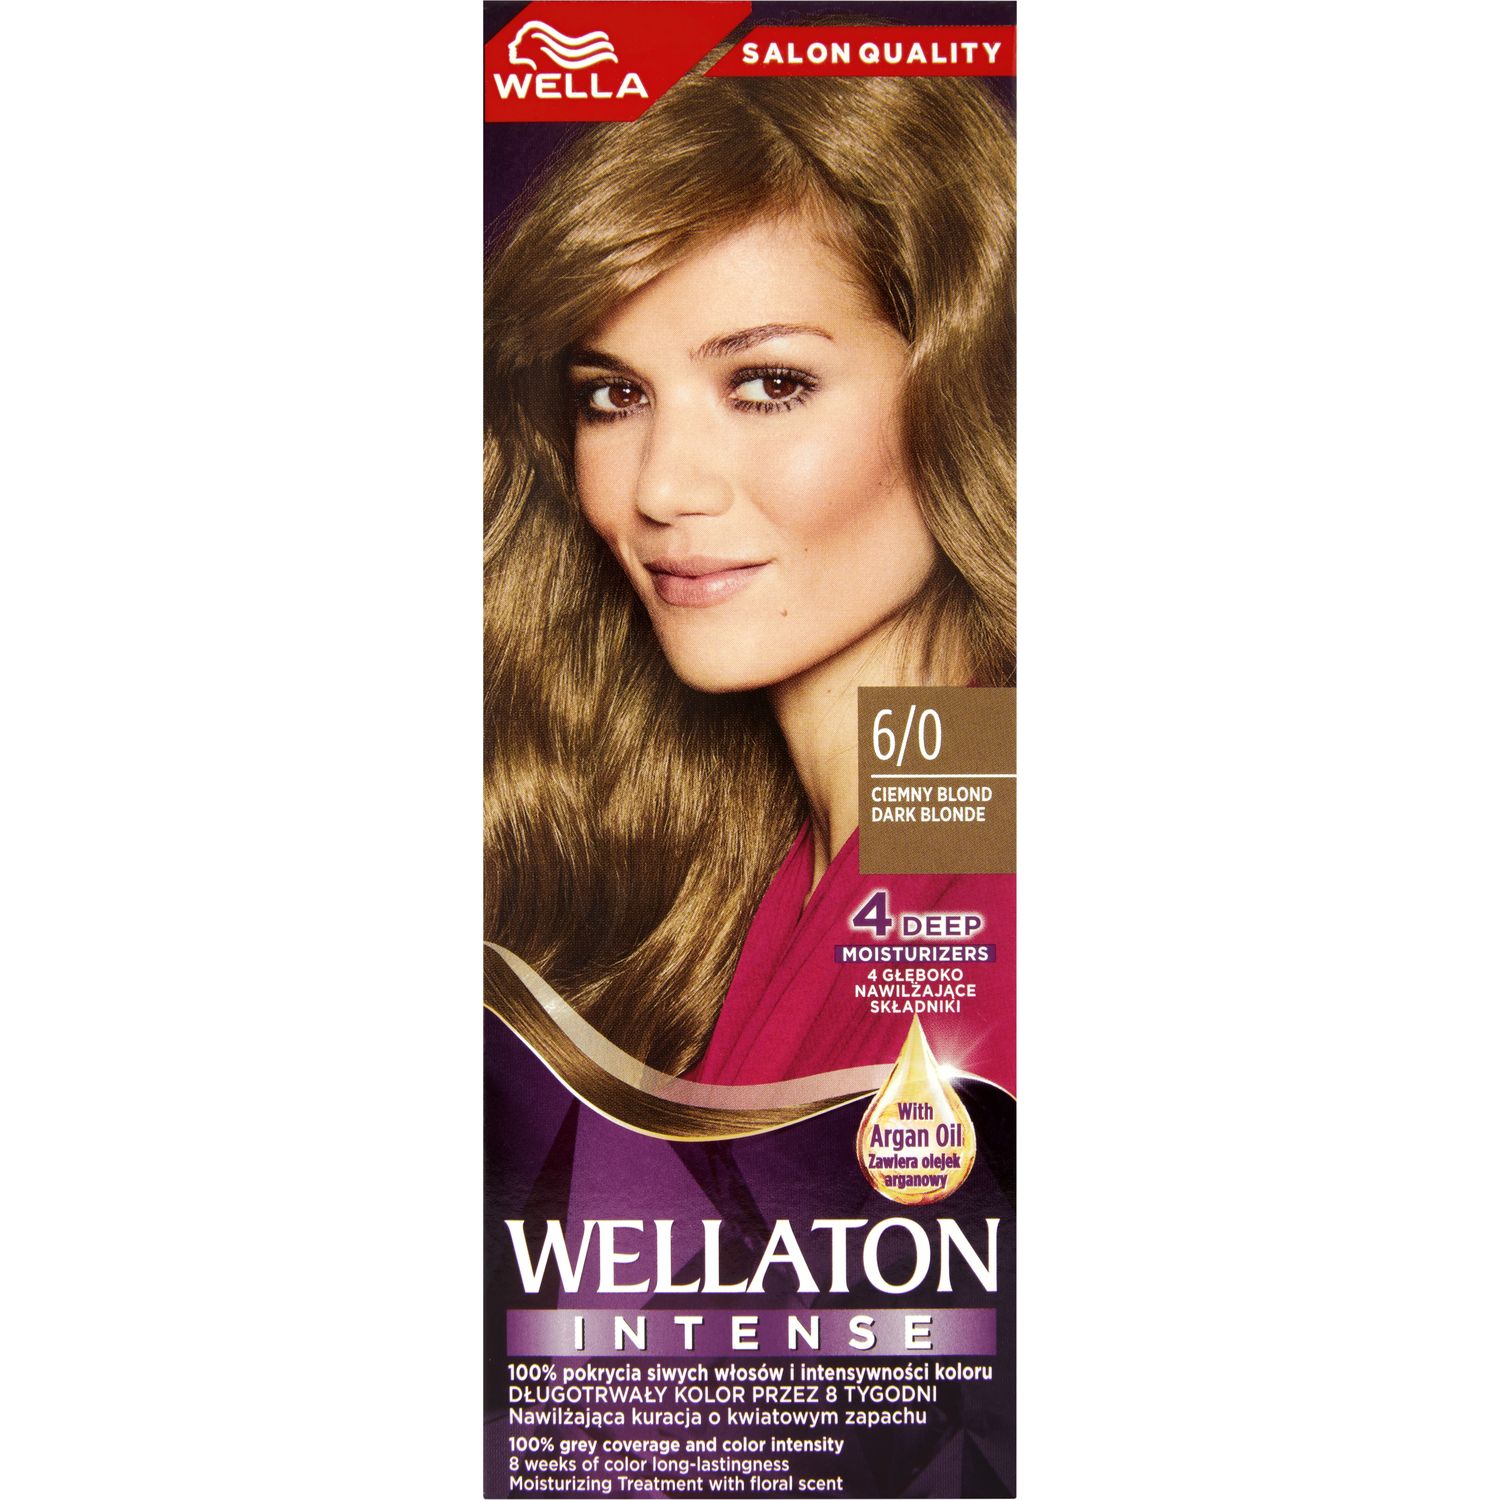 Интенсивная крем-краска для волос Wellaton, оттенок 6/0 (Темный блонд), 110 мл - фото 2